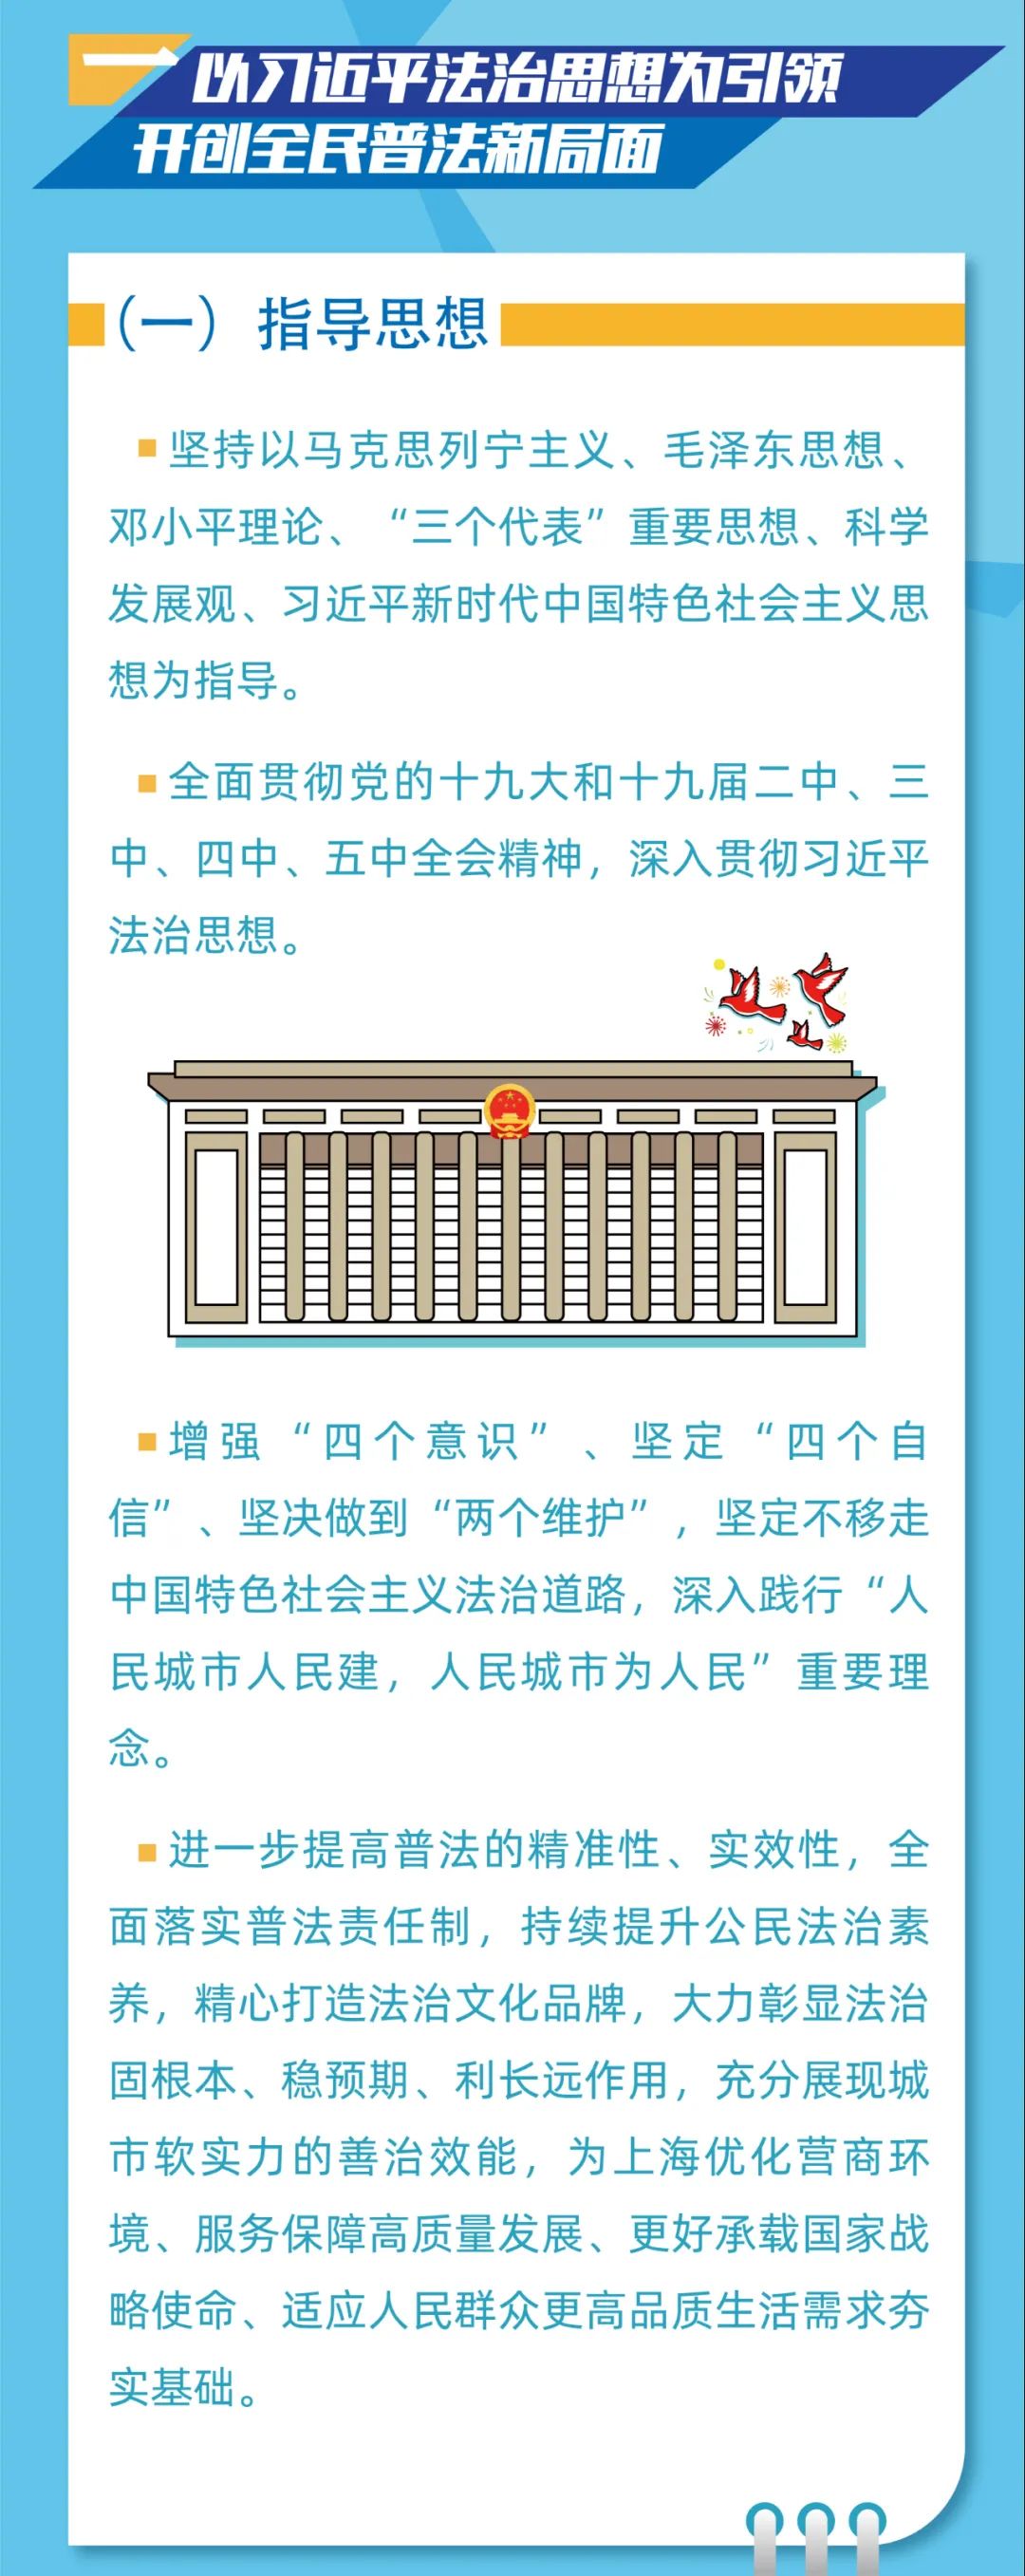 上海市 八五 普法规划发布 一图了解 上海频道 央视网